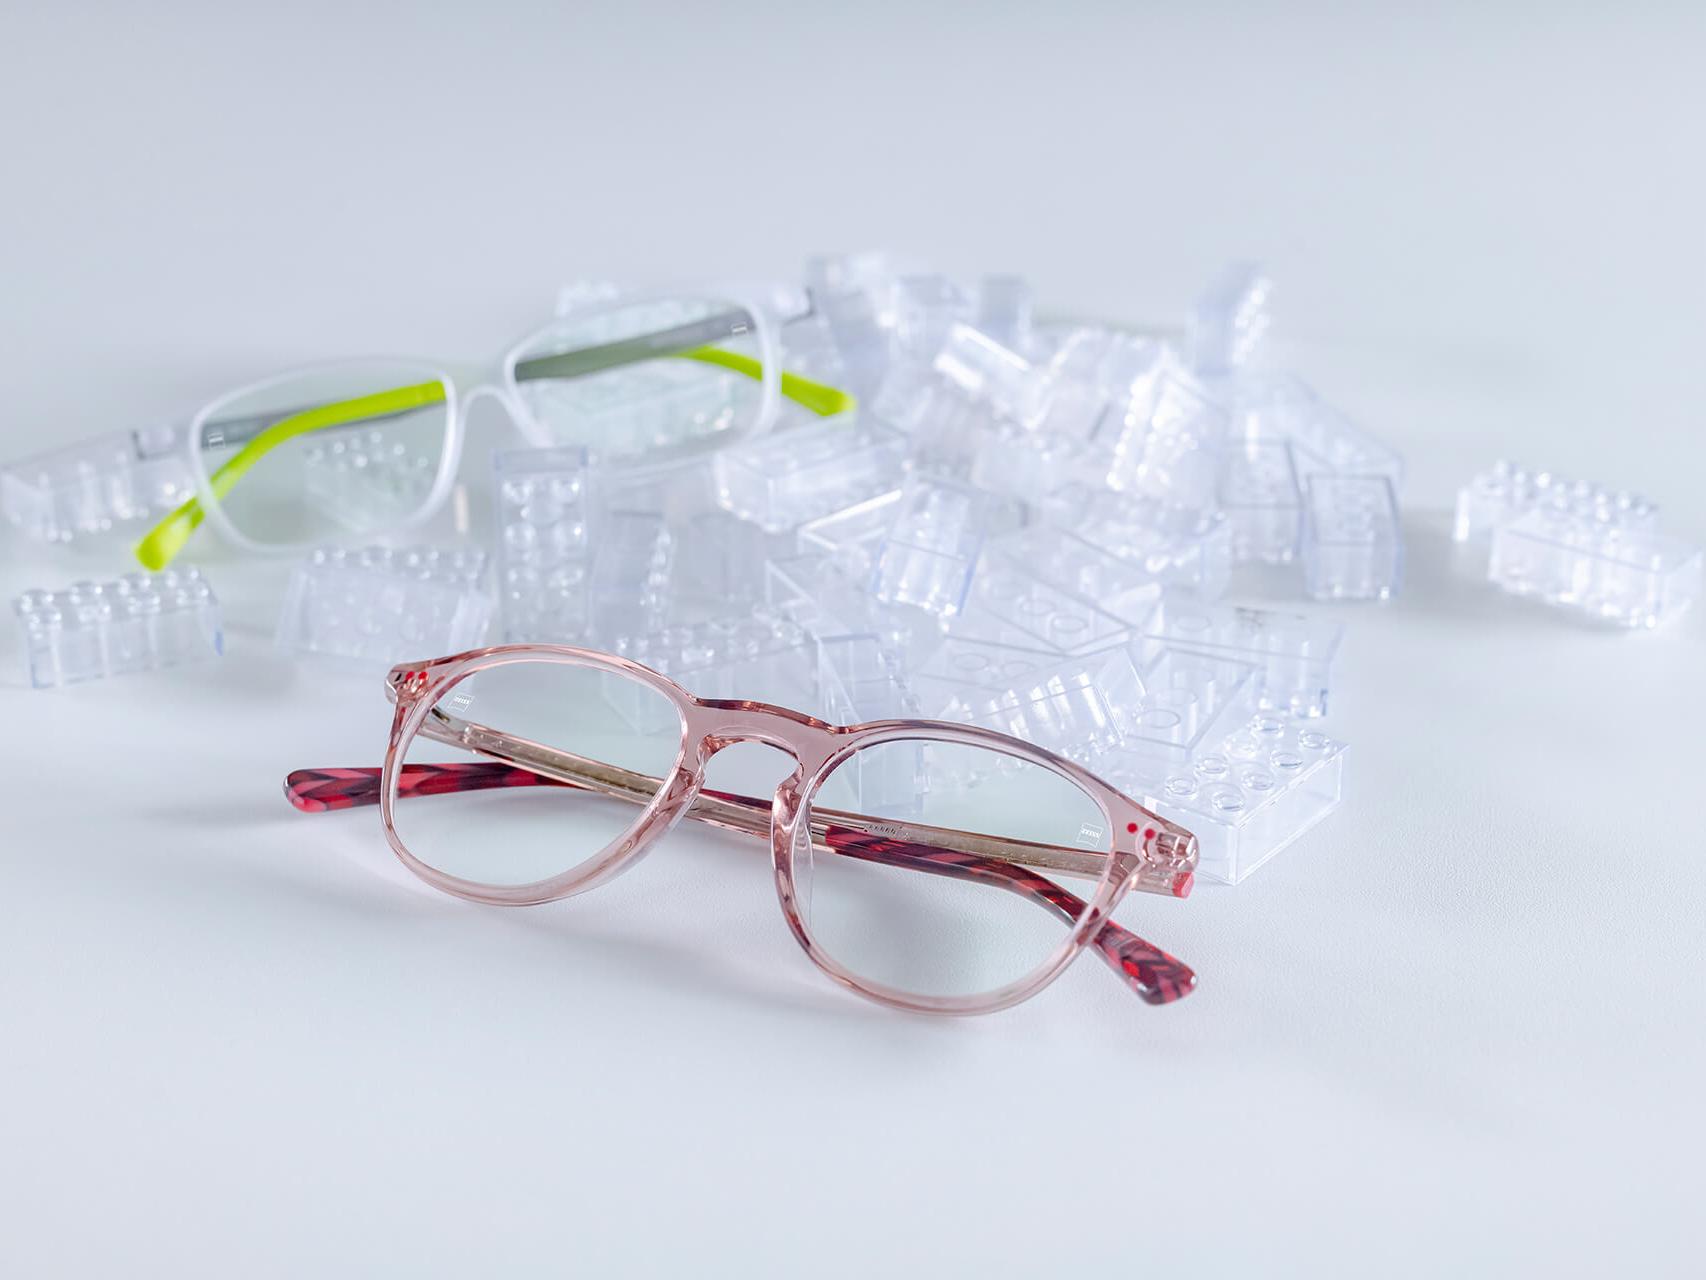 Due paia di occhiali per bambini con lenti ZEISS e trattamenti per bambini DuraVision®. Gli occhiali sono posti tra mattoncini trasparenti per bambini.